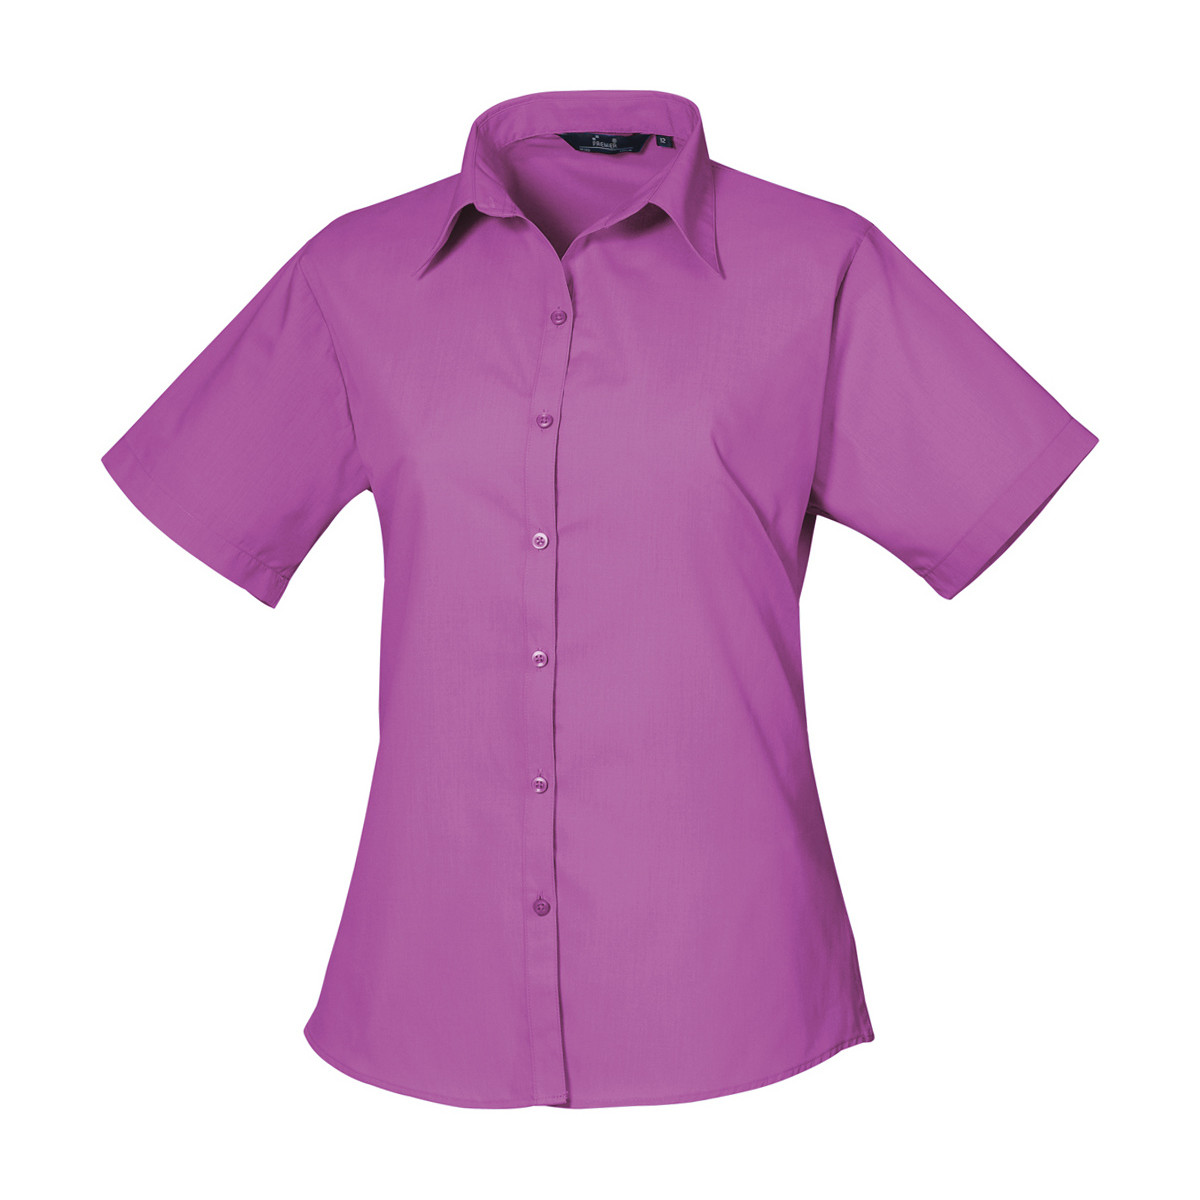 Vêtements Femme Chemises / Chemisiers Premier PR302 Rouge